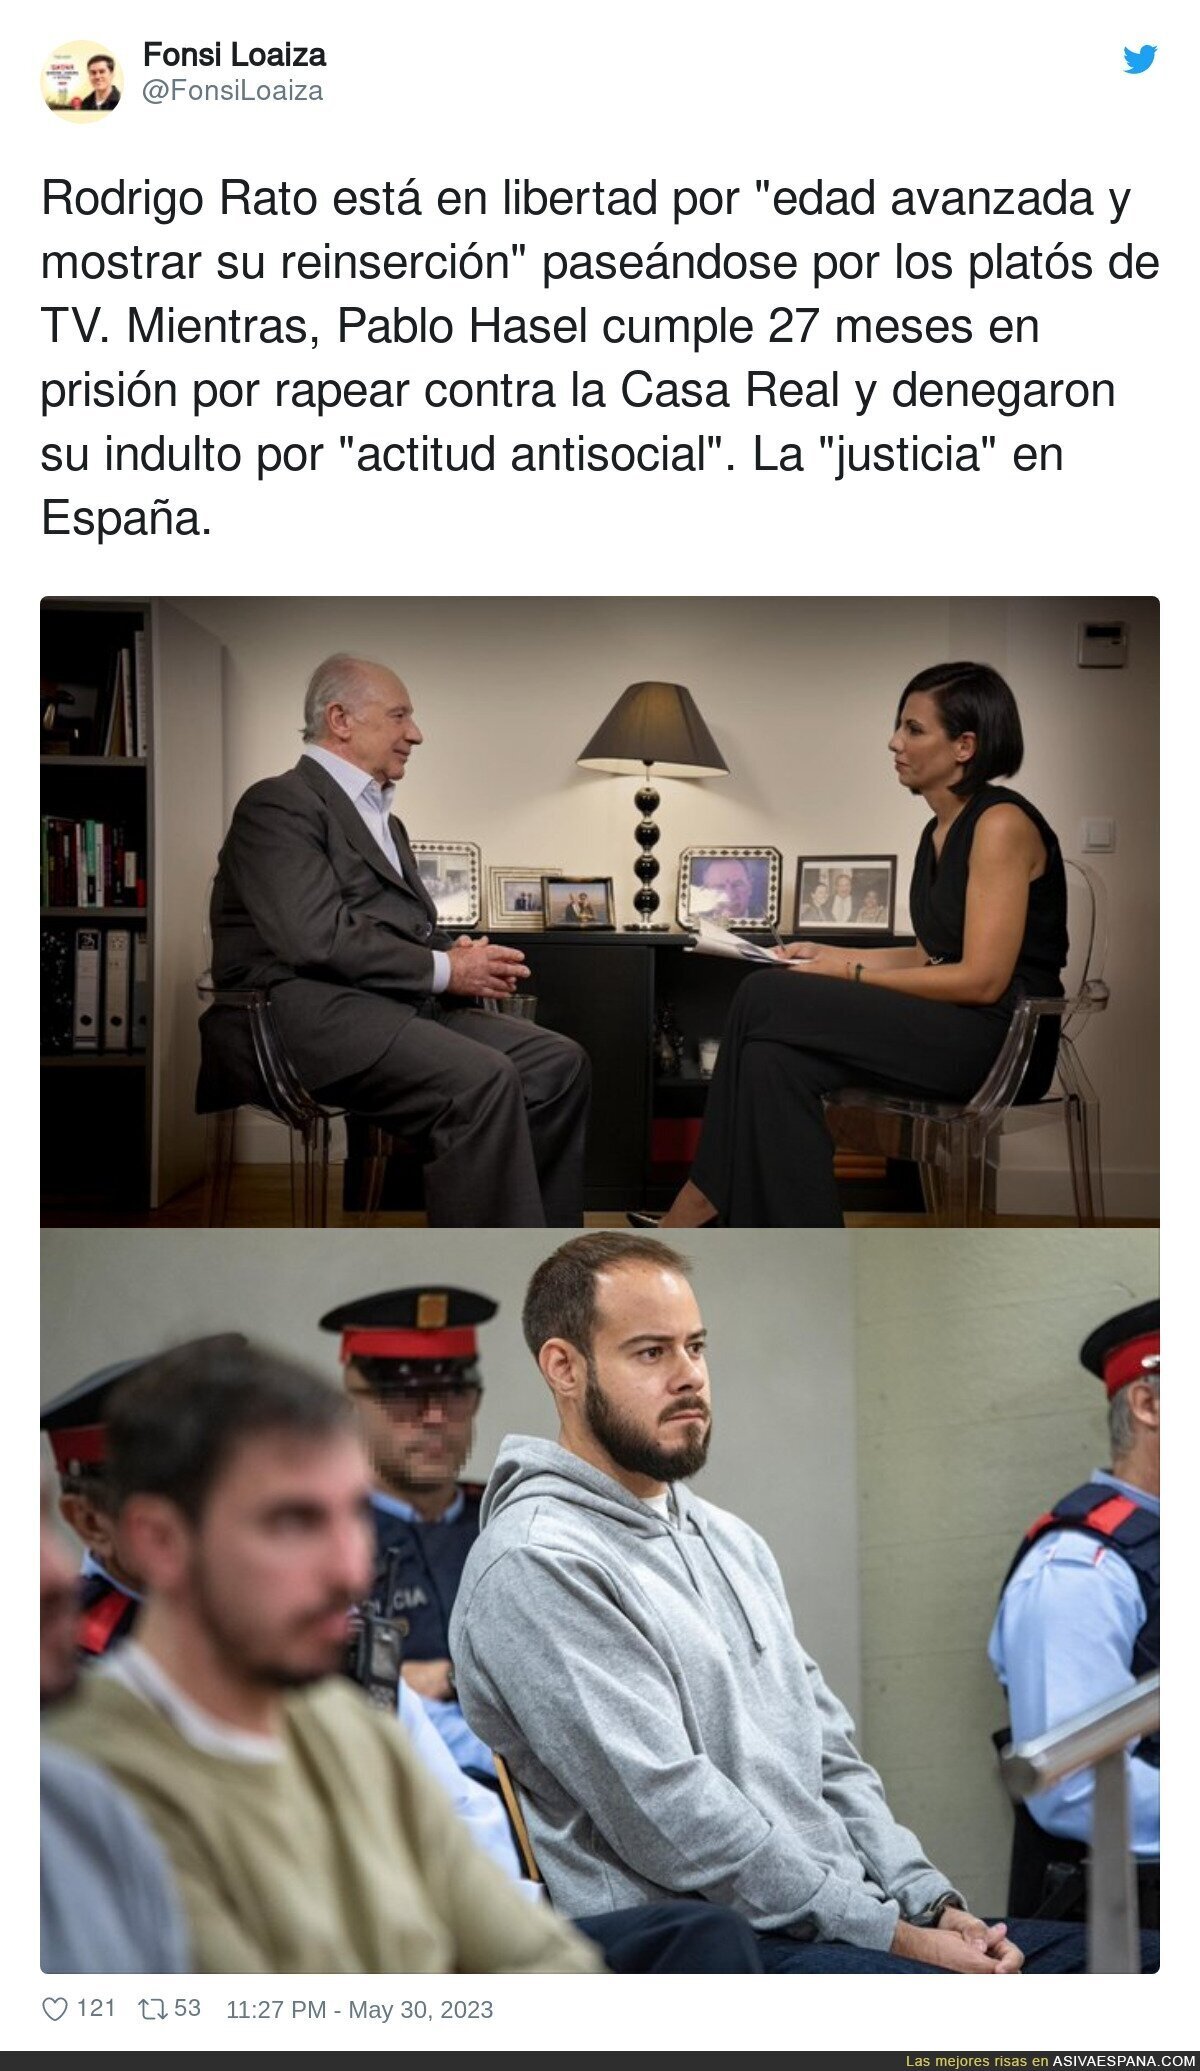 La justicia en España no existe